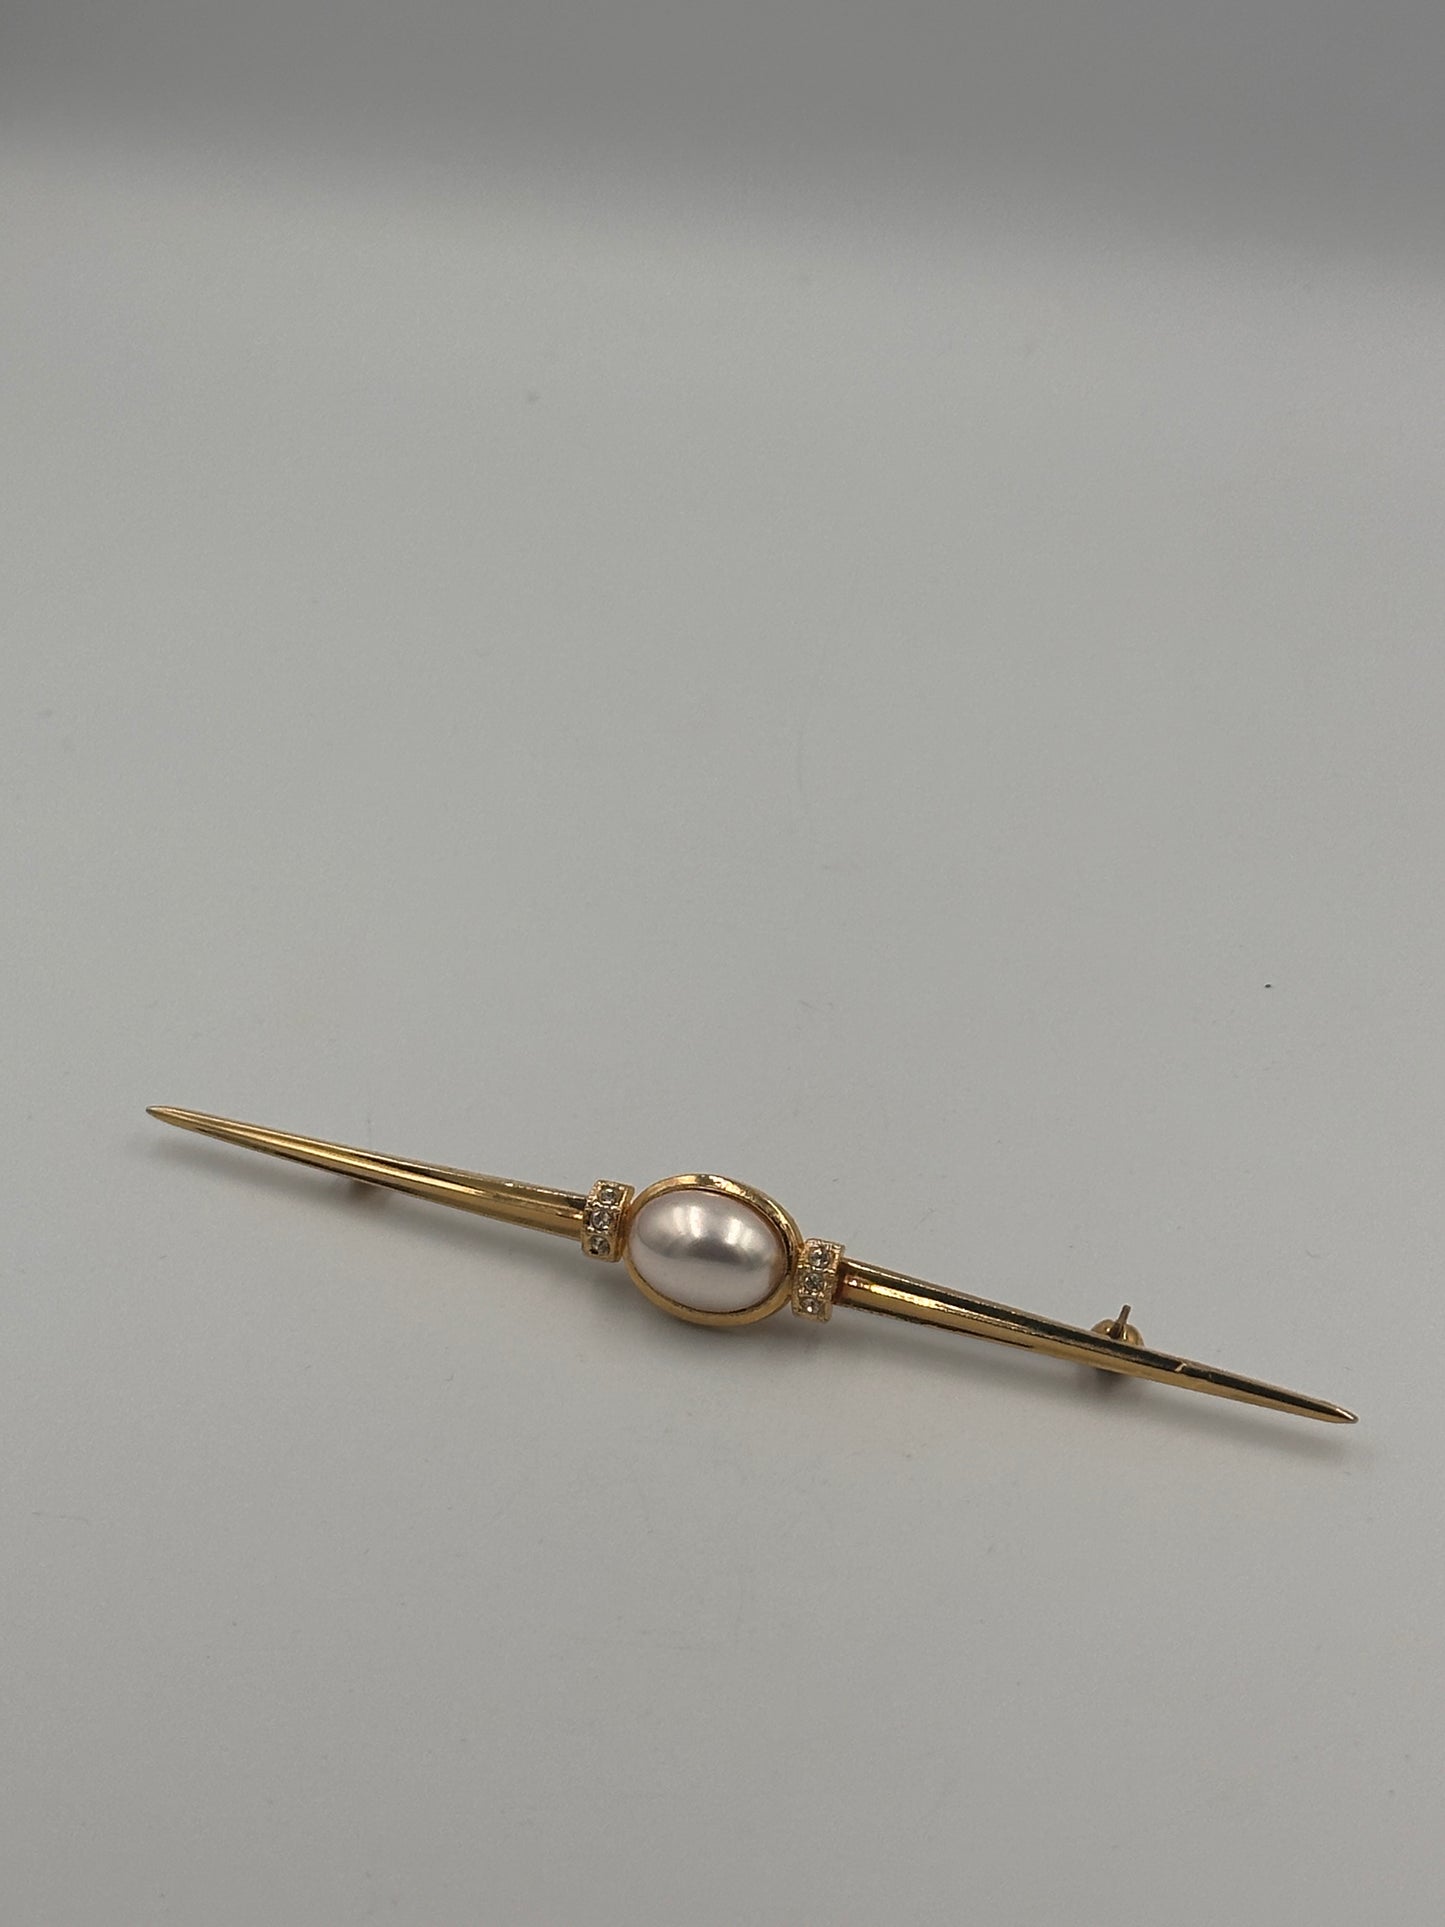 Vintage Vergoldete Brosche mit Zirkoniasteinen und Perle